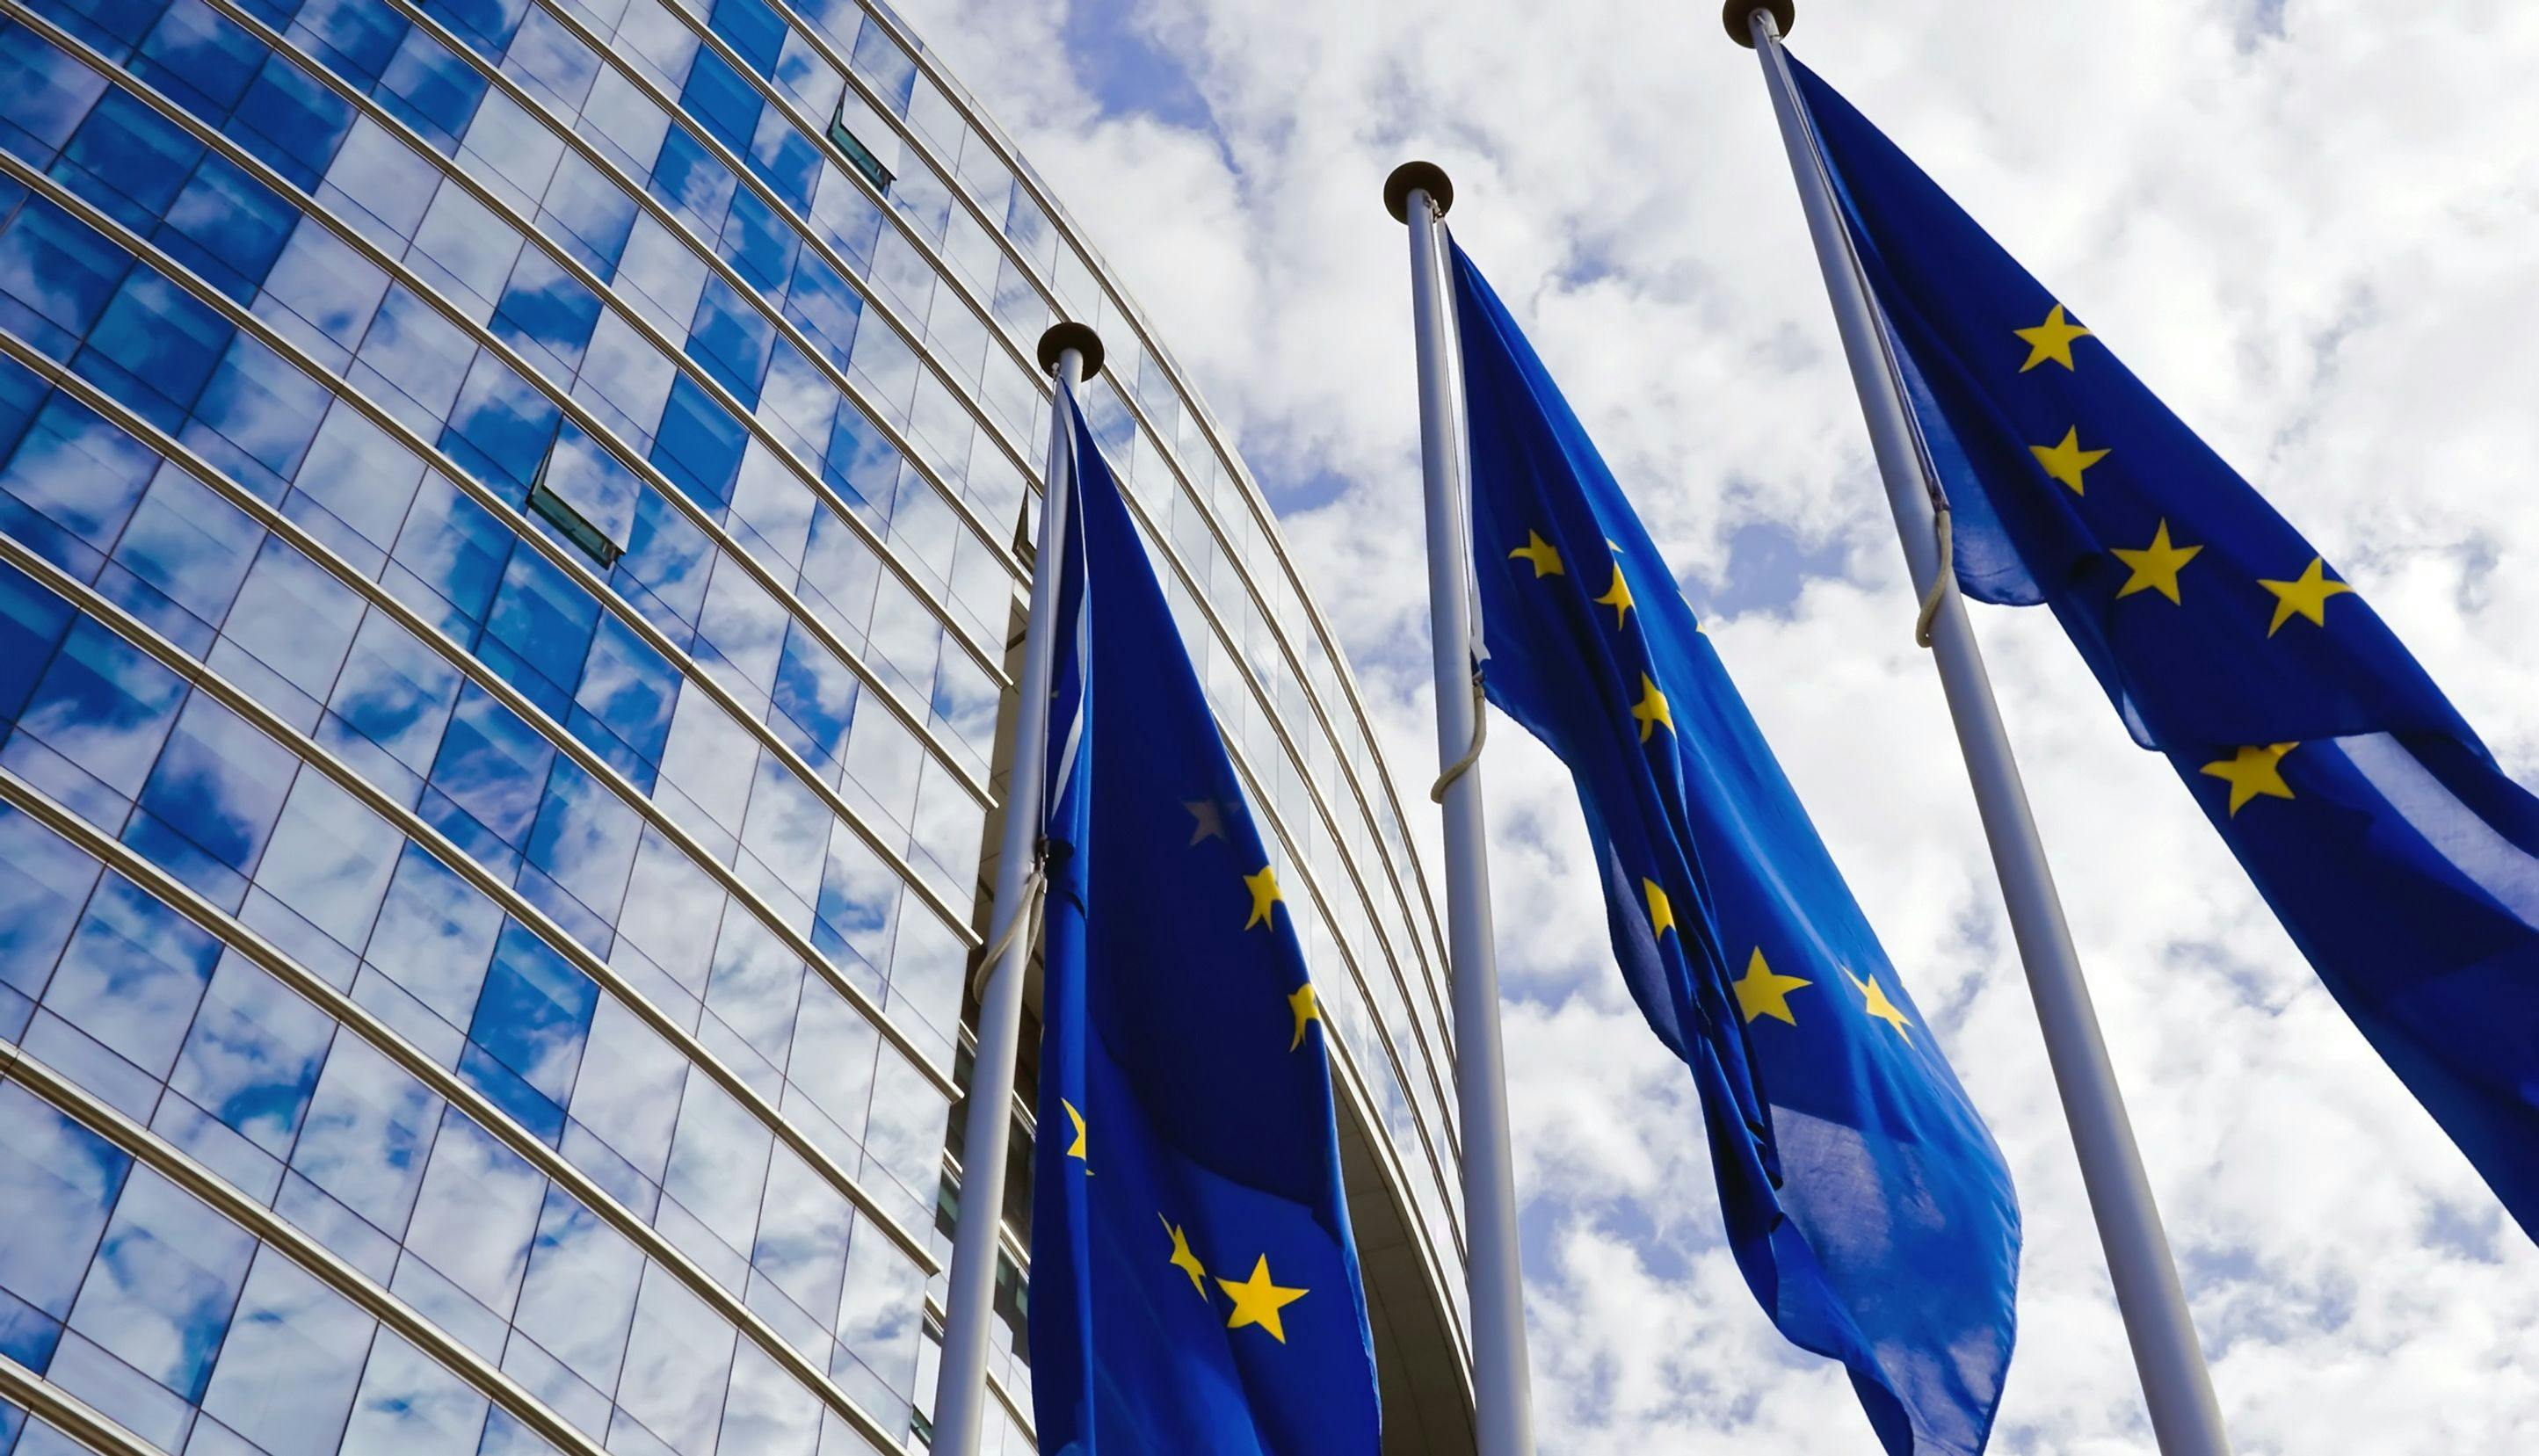 EU-flagg foran EU-bygning.